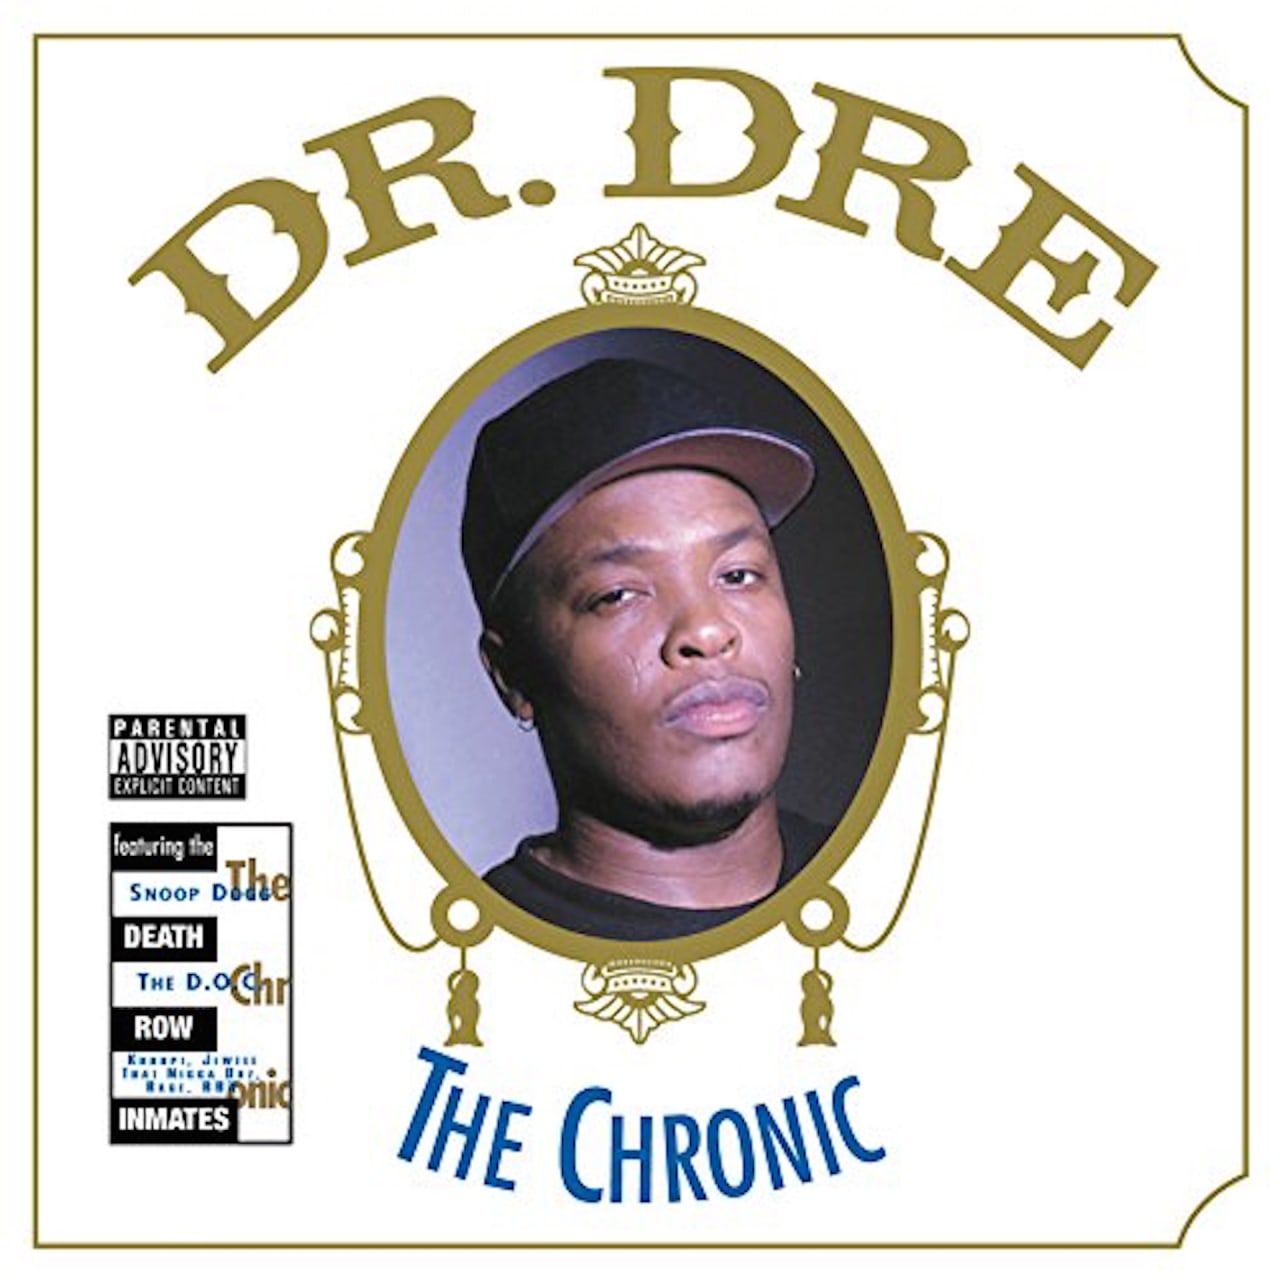 dr dre the chronic album artwork